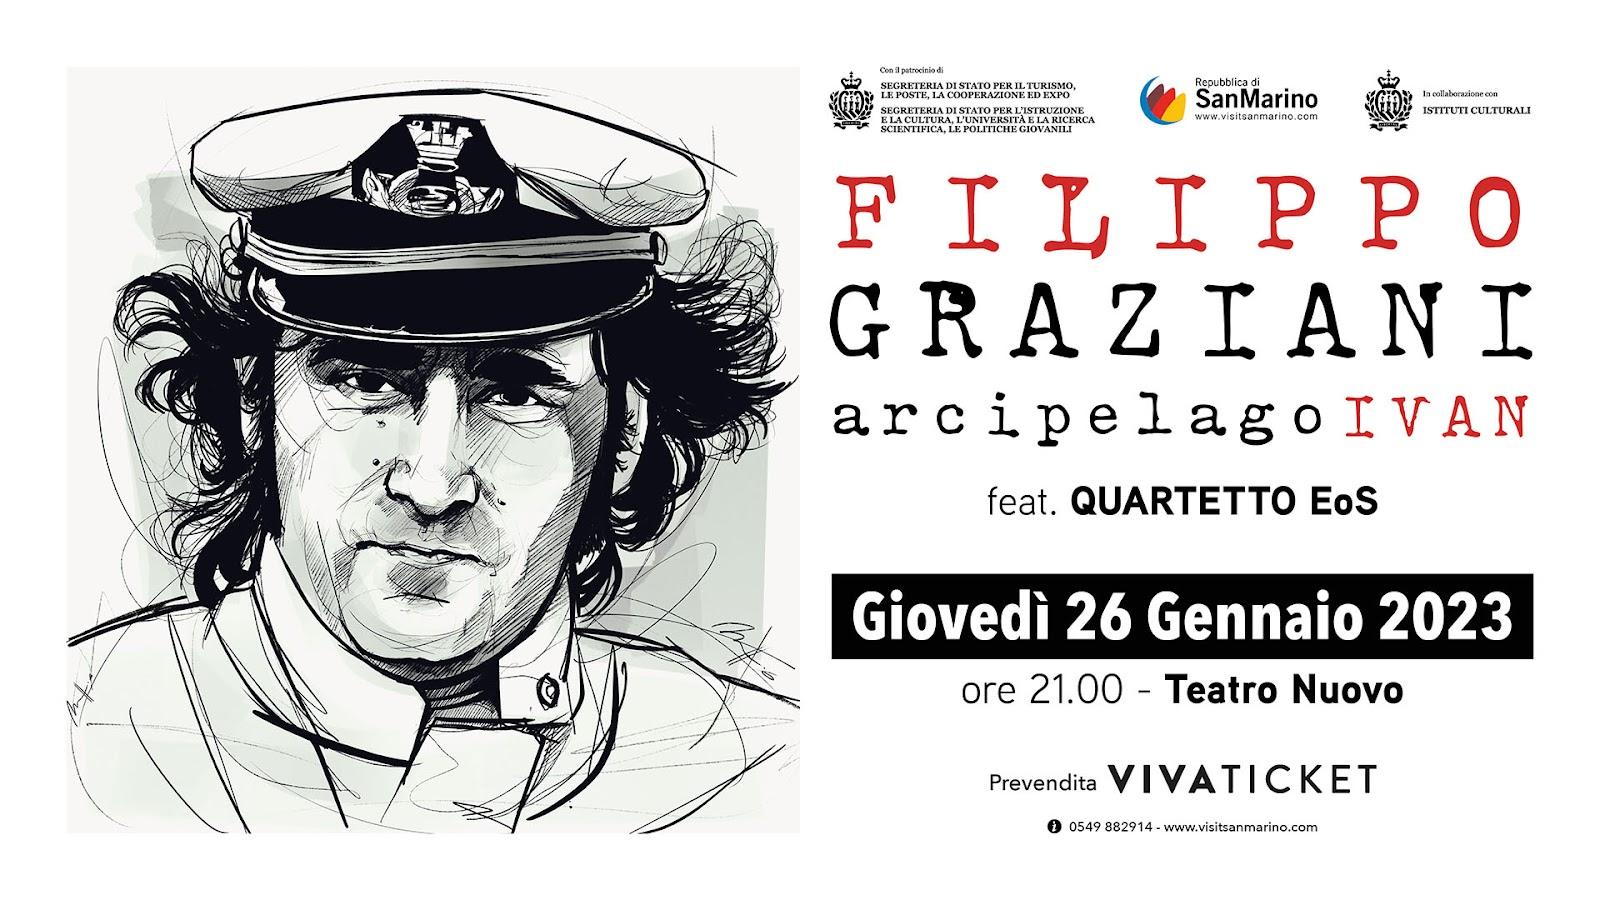 Filippo Graziani in ARCIPELAGO IVAN Appuntamento il 26 gennaio 2023 alle ore 21.00 presso Teatro Nuovo